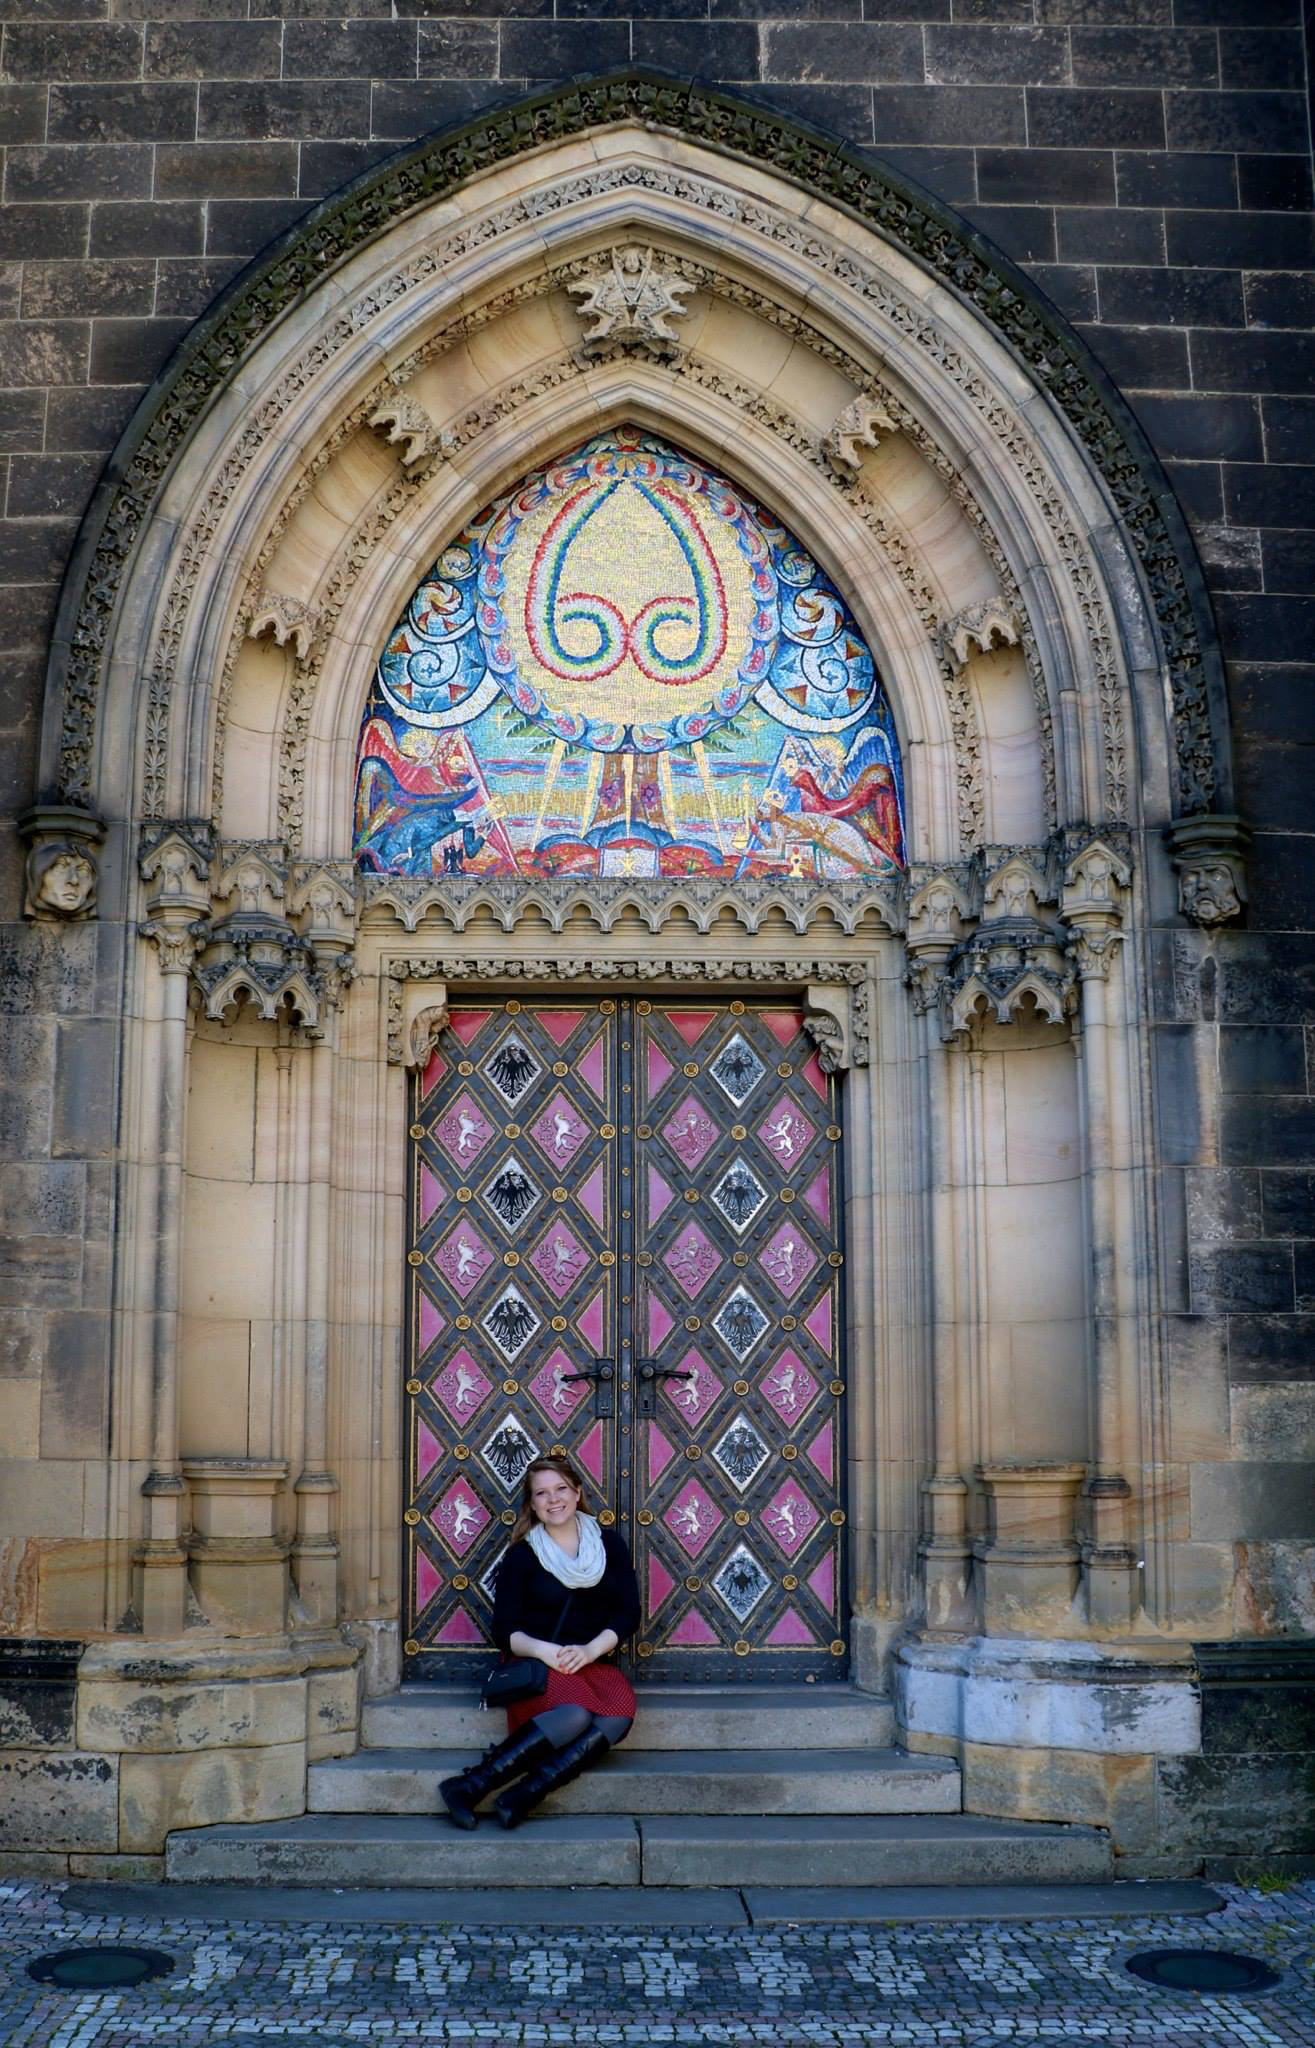 Brooke Prague 2 church door